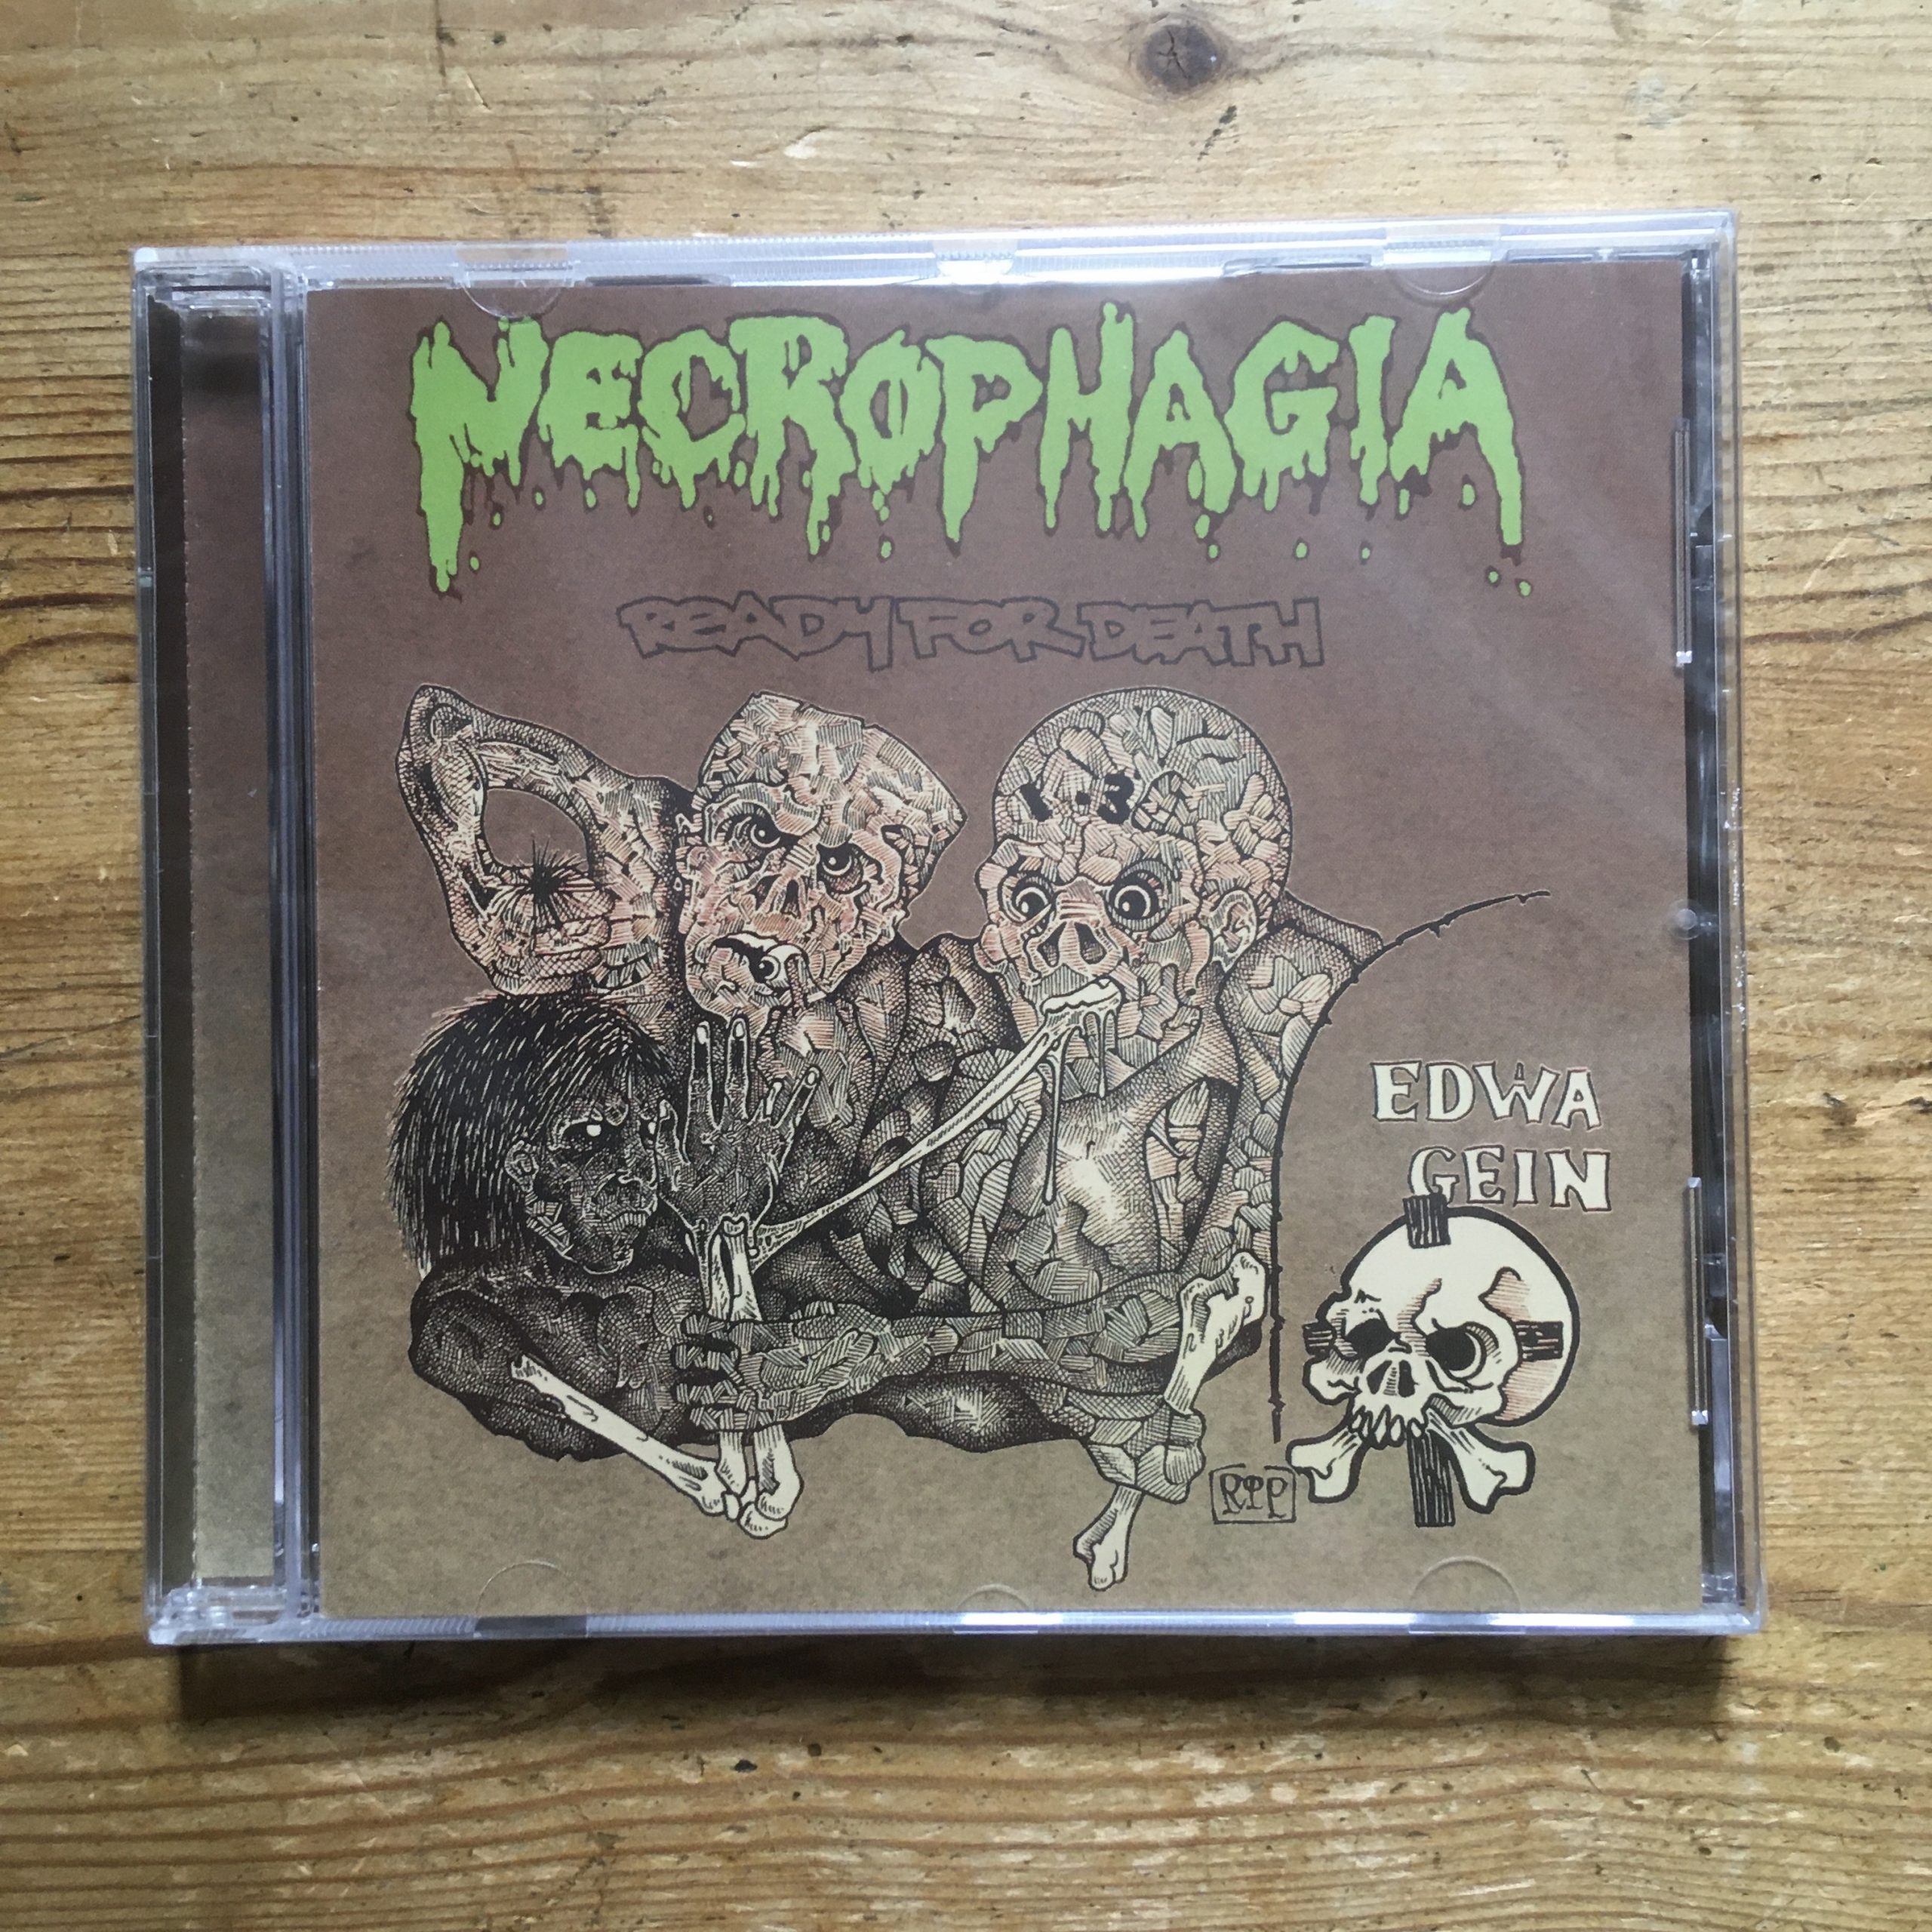 Photo of the Necrophagia - 